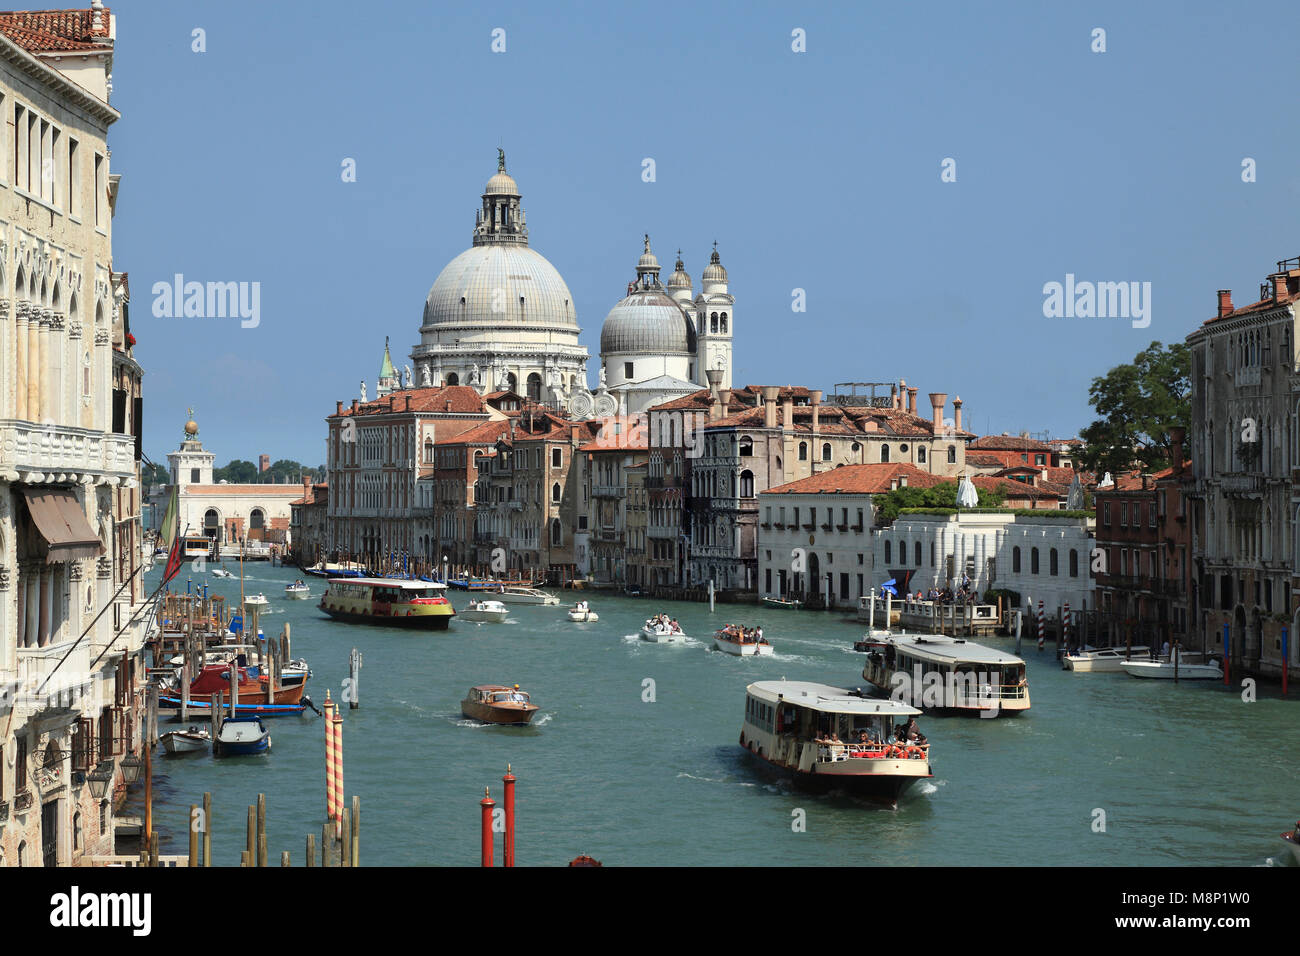 Le Grand Canal de Venise. Italie Banque D'Images